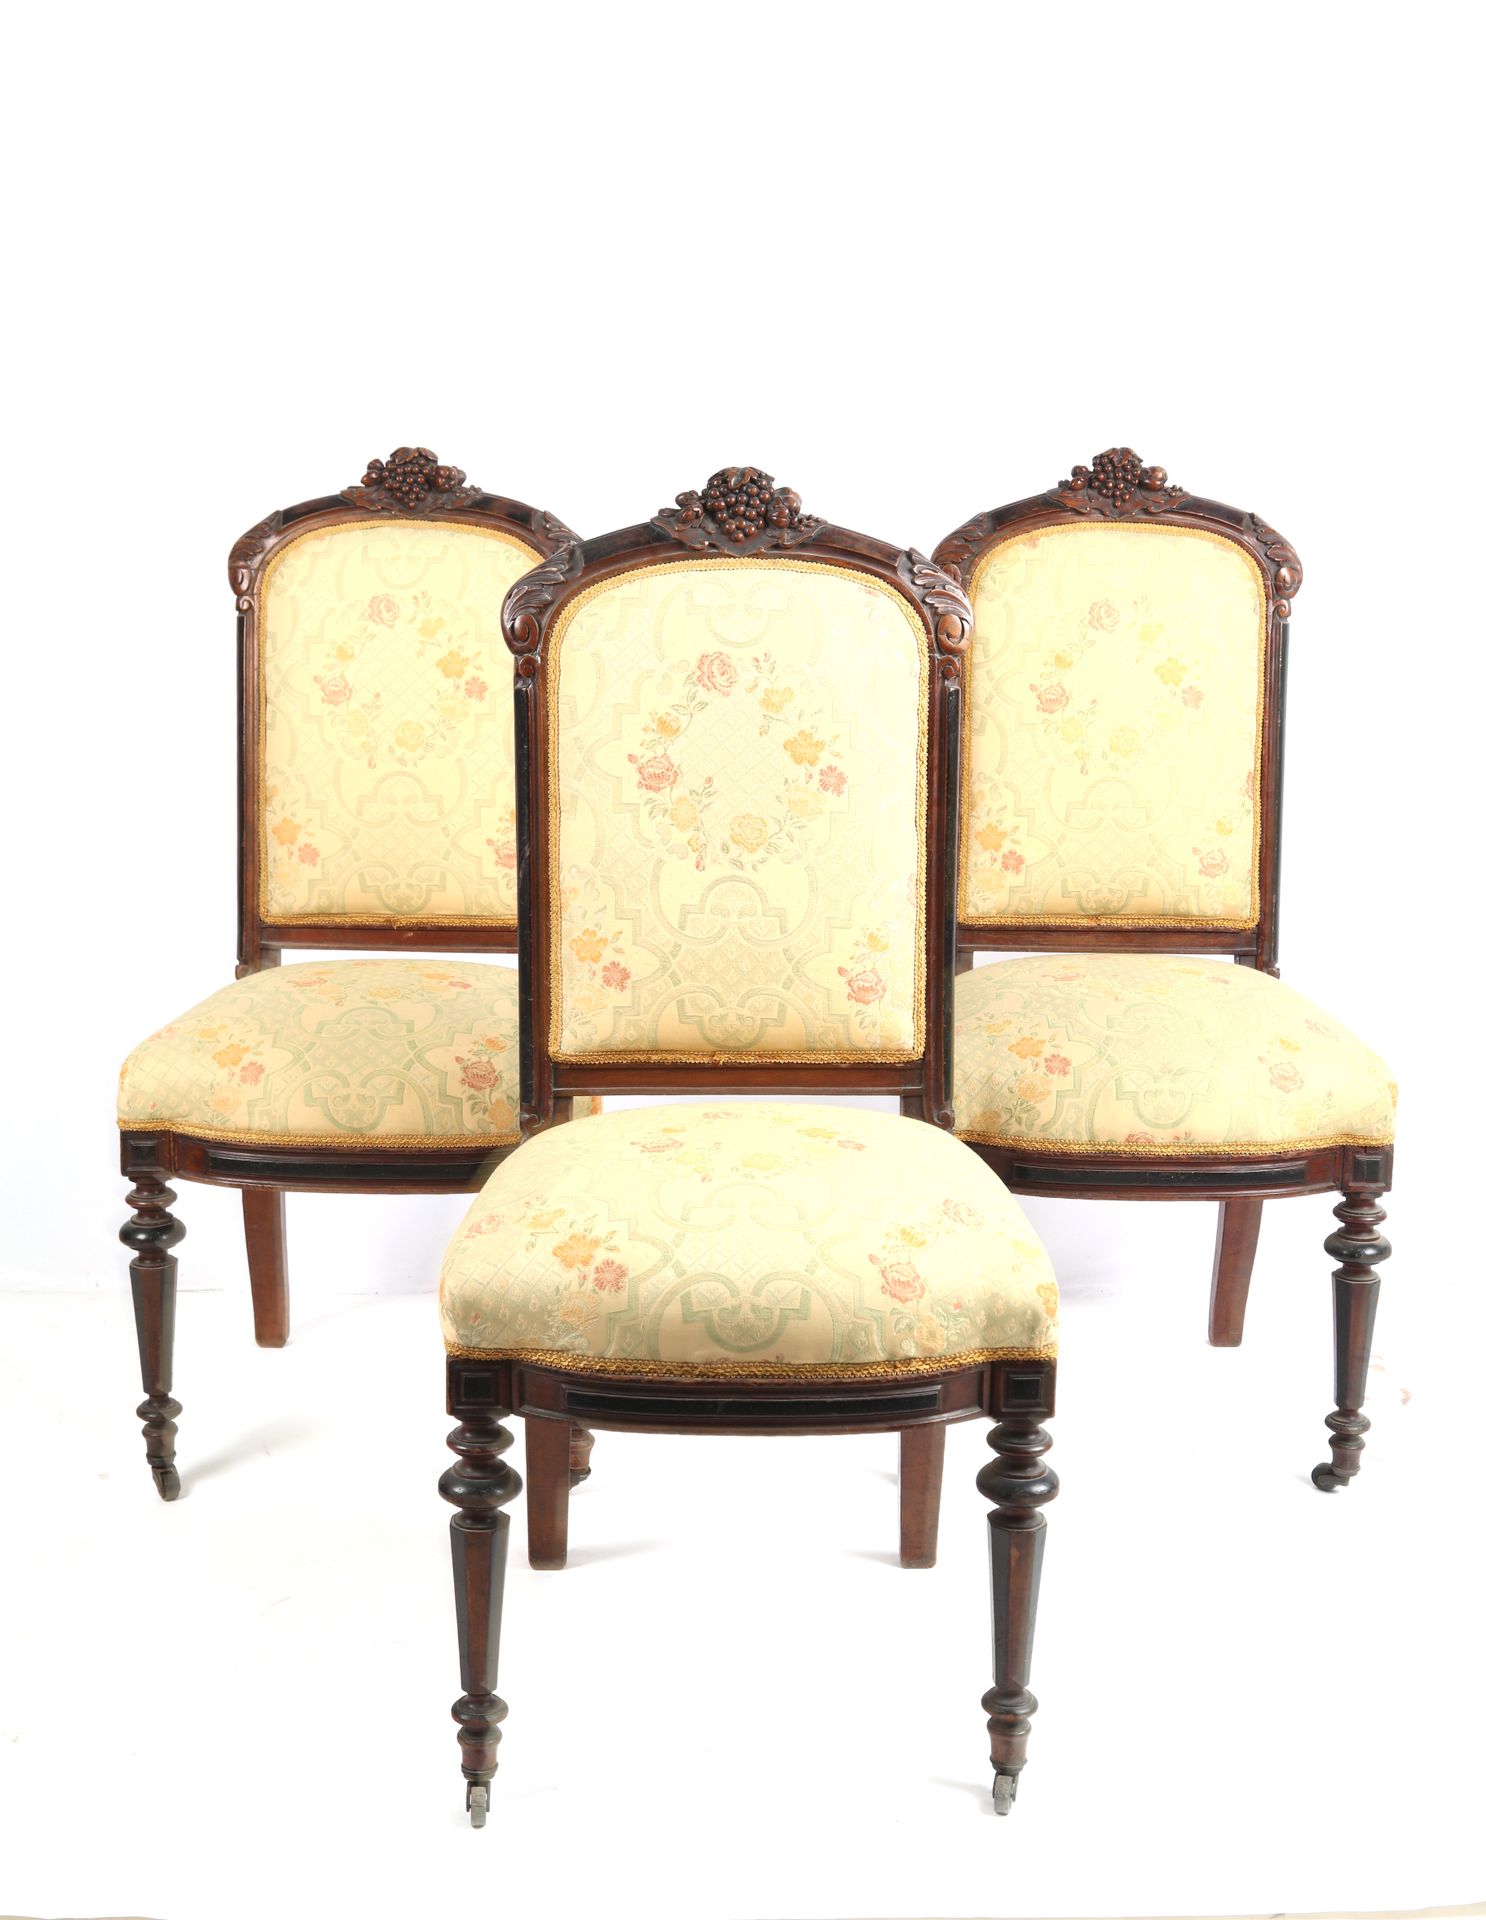 Null 一套3把桃花心木椅子，椅背顶部有雕刻的玫瑰花。路易十六的风格。